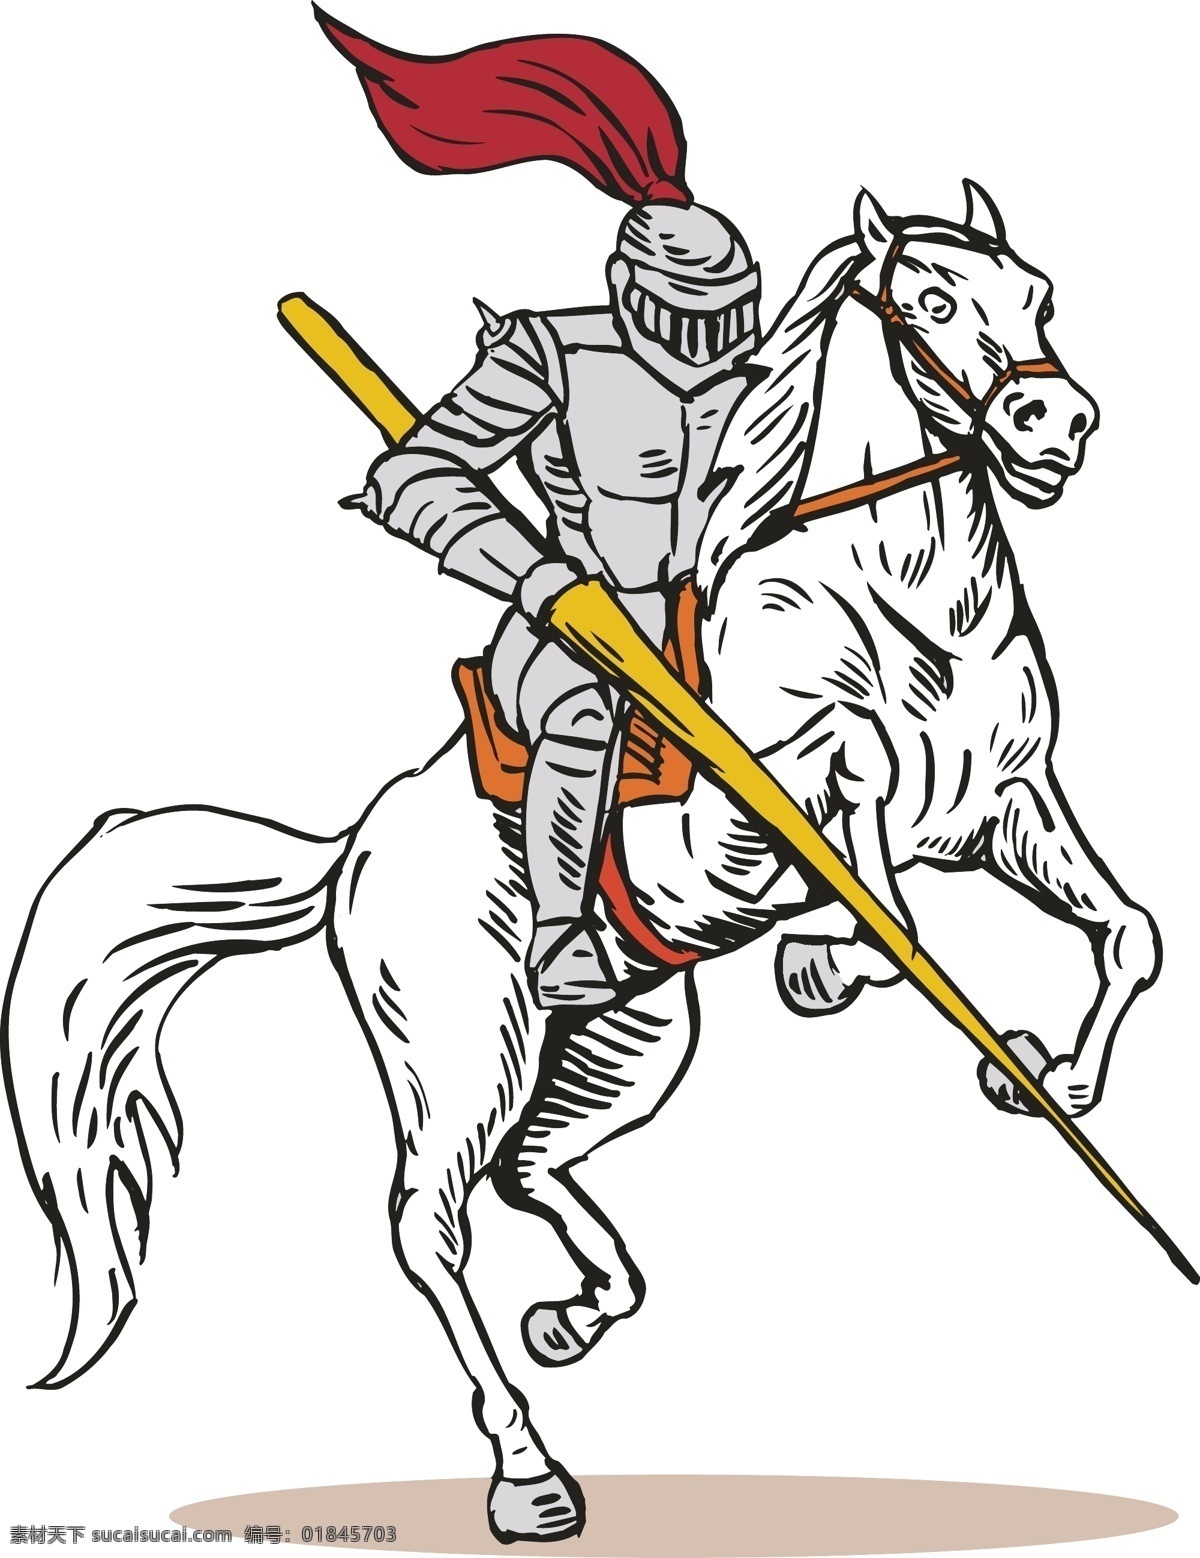 骑士 古代 其他人物 矢量人物 手绘 骑士矢量素材 骑士模板下载 古代骑士 欧洲骑士 古骑士 矢量 矢量图